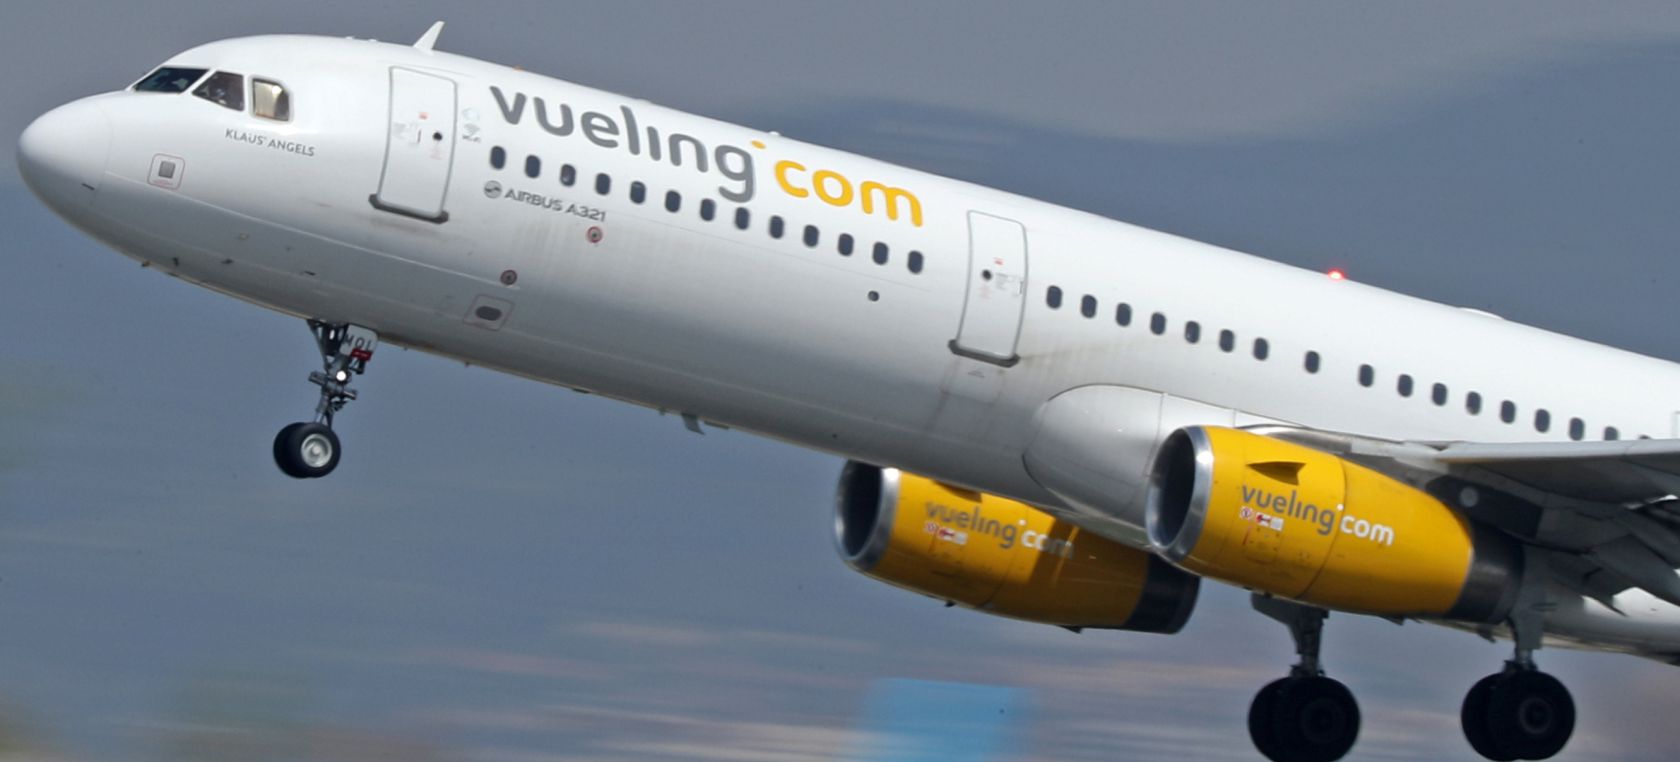 Alerta si tienes un vuelo: los tripulantes de cabina de Vueling convocan huelgas de noviembre a enero de 2023